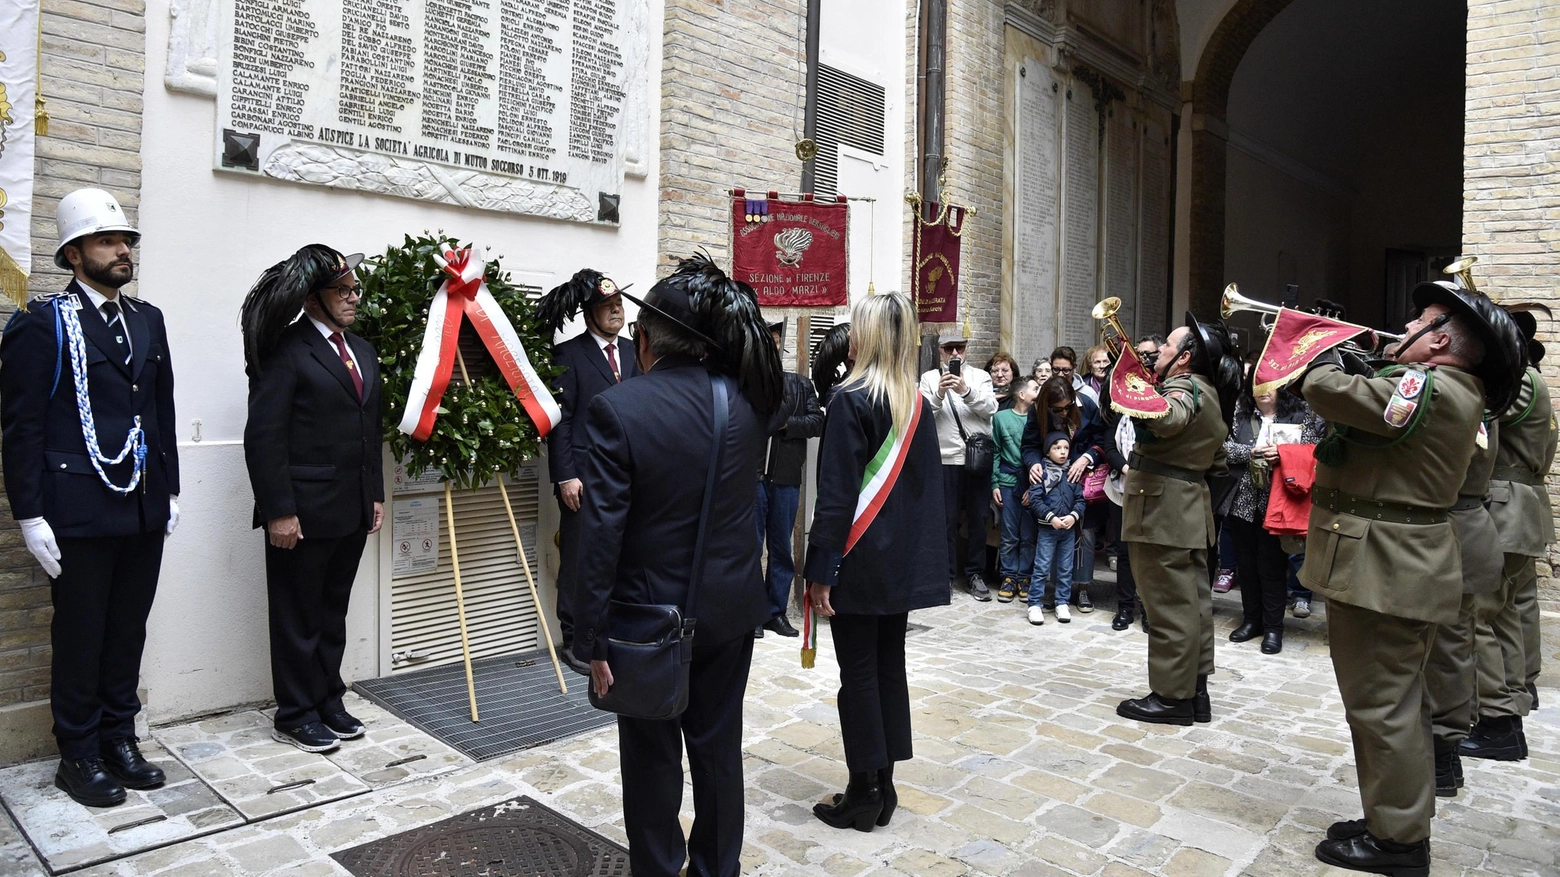 Il gruppo arrivato da Firenze ha attirato l’attenzione di centinaia di curiosi. Deposta una corona d’alloro nel cortile del Comune in onore dei caduti.